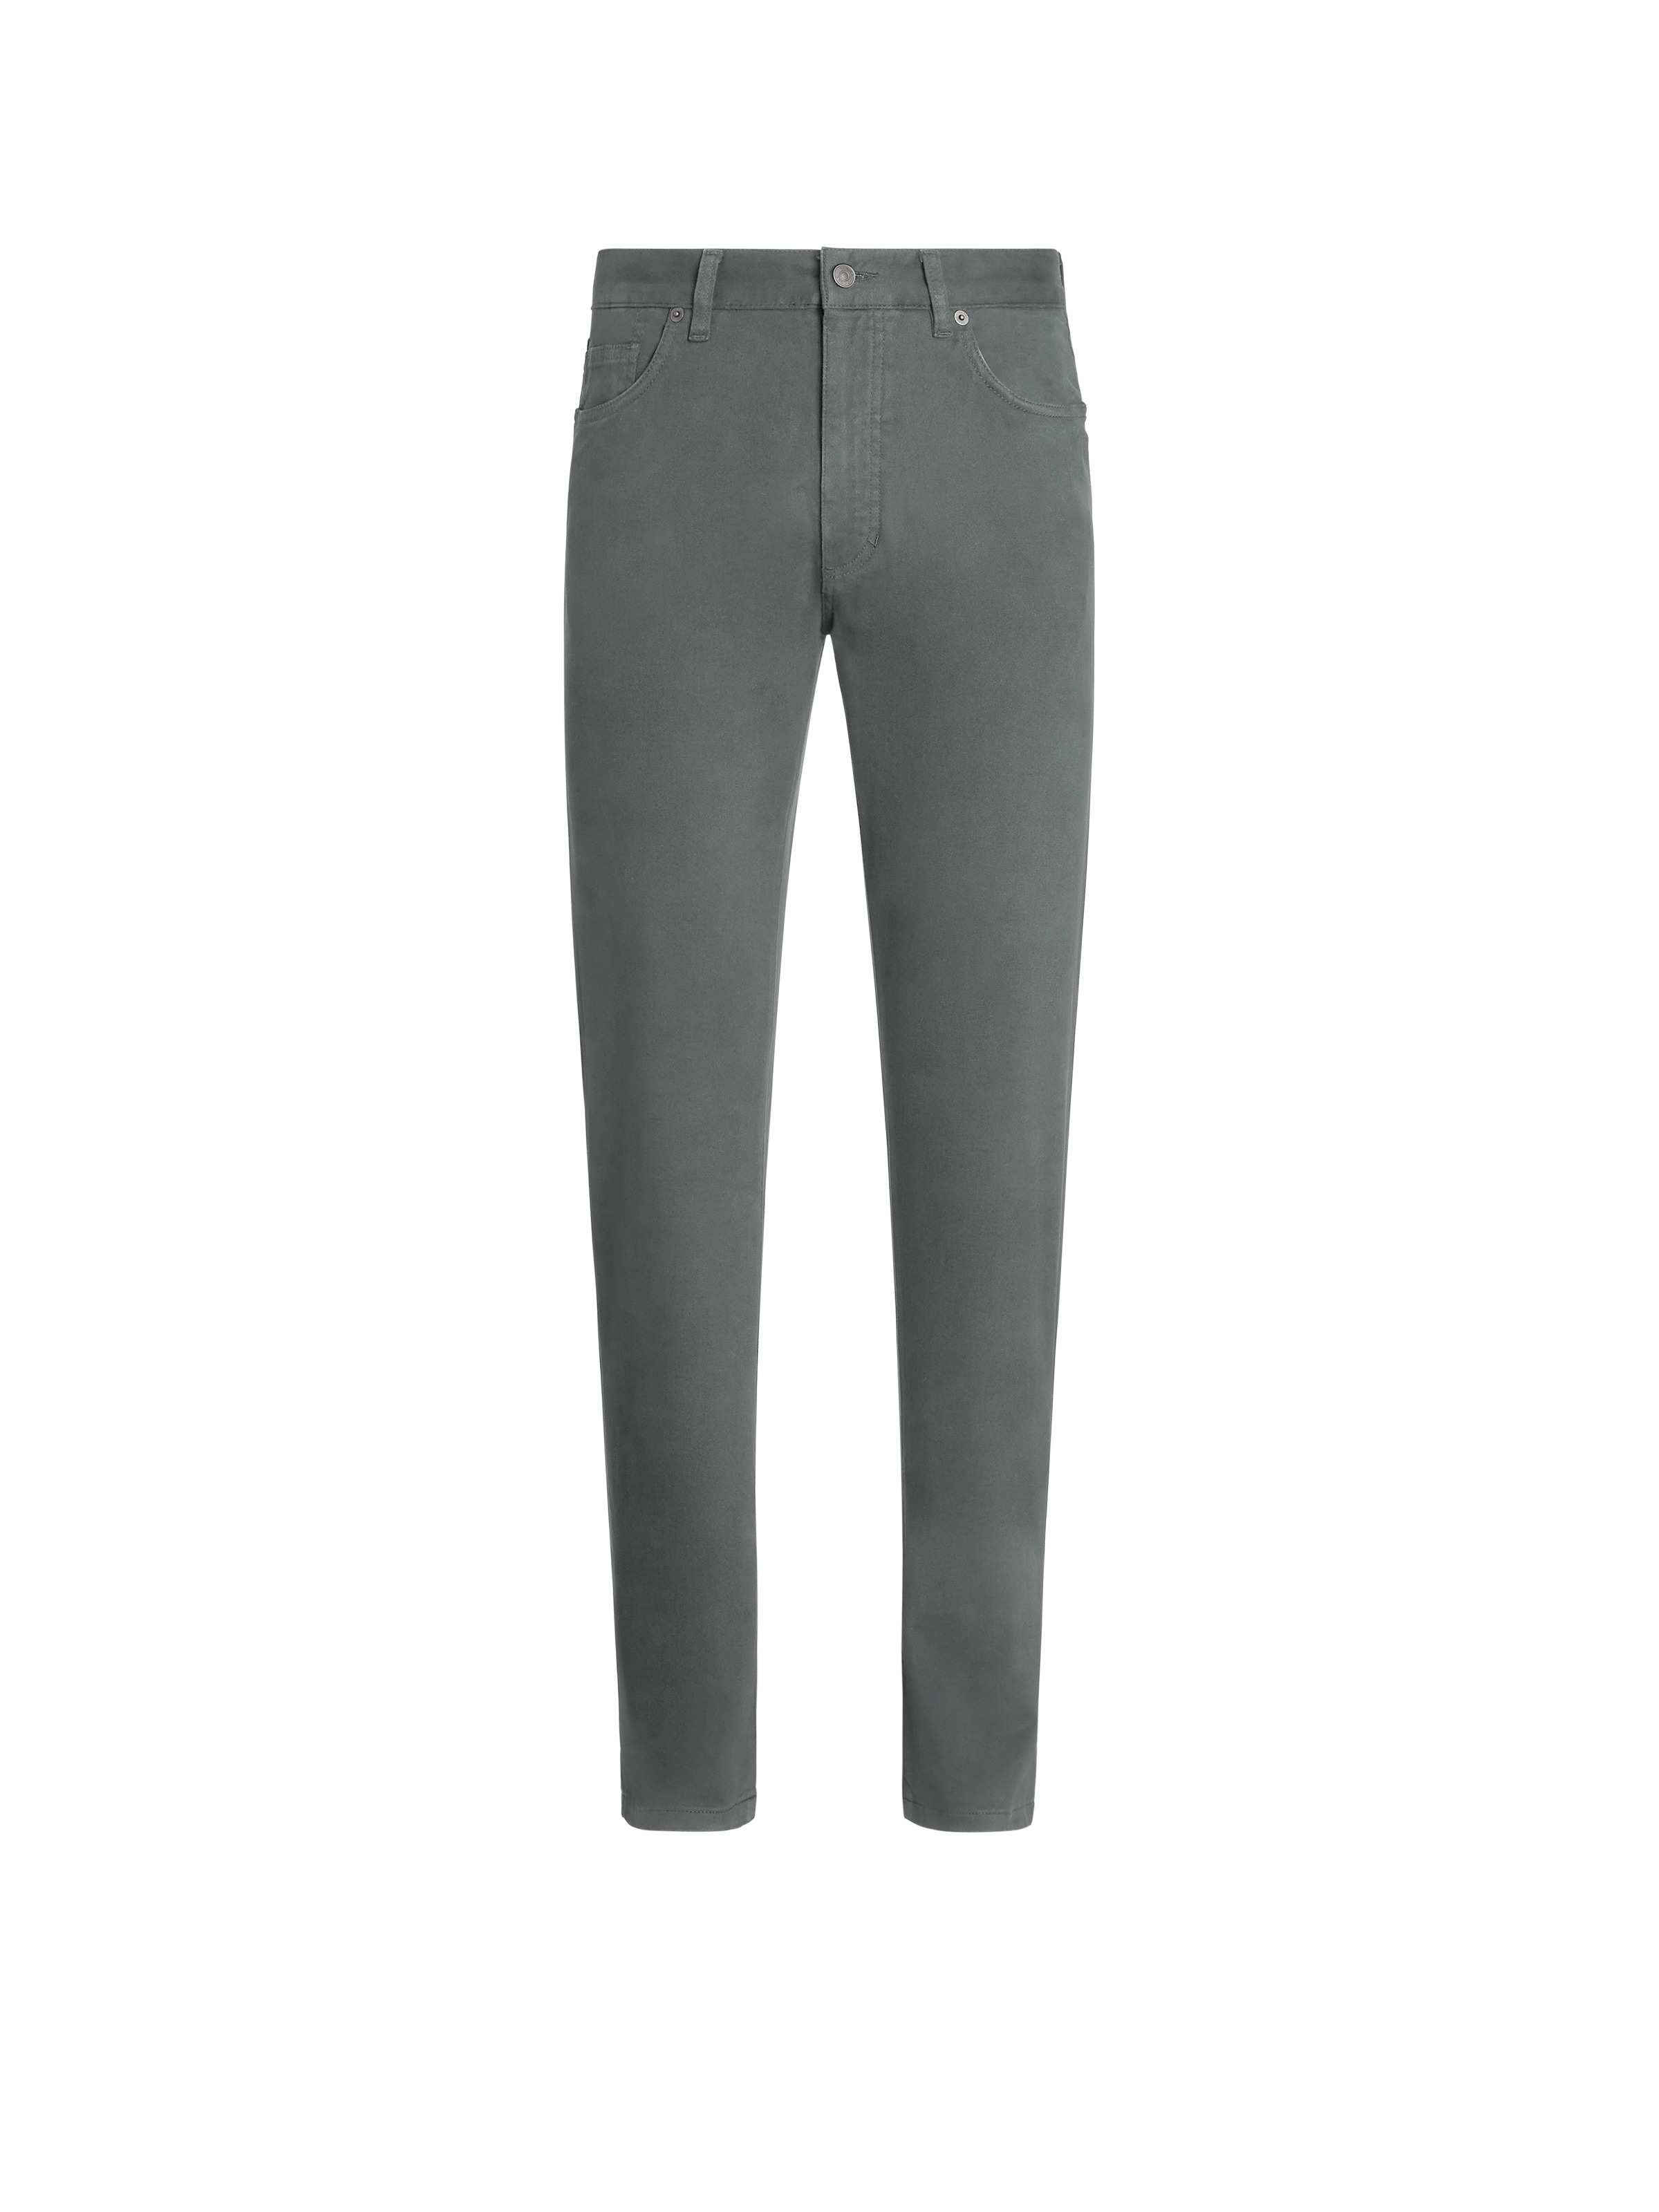 Shop Zegna Light Grey Stretch Cotton Roccia Jeans